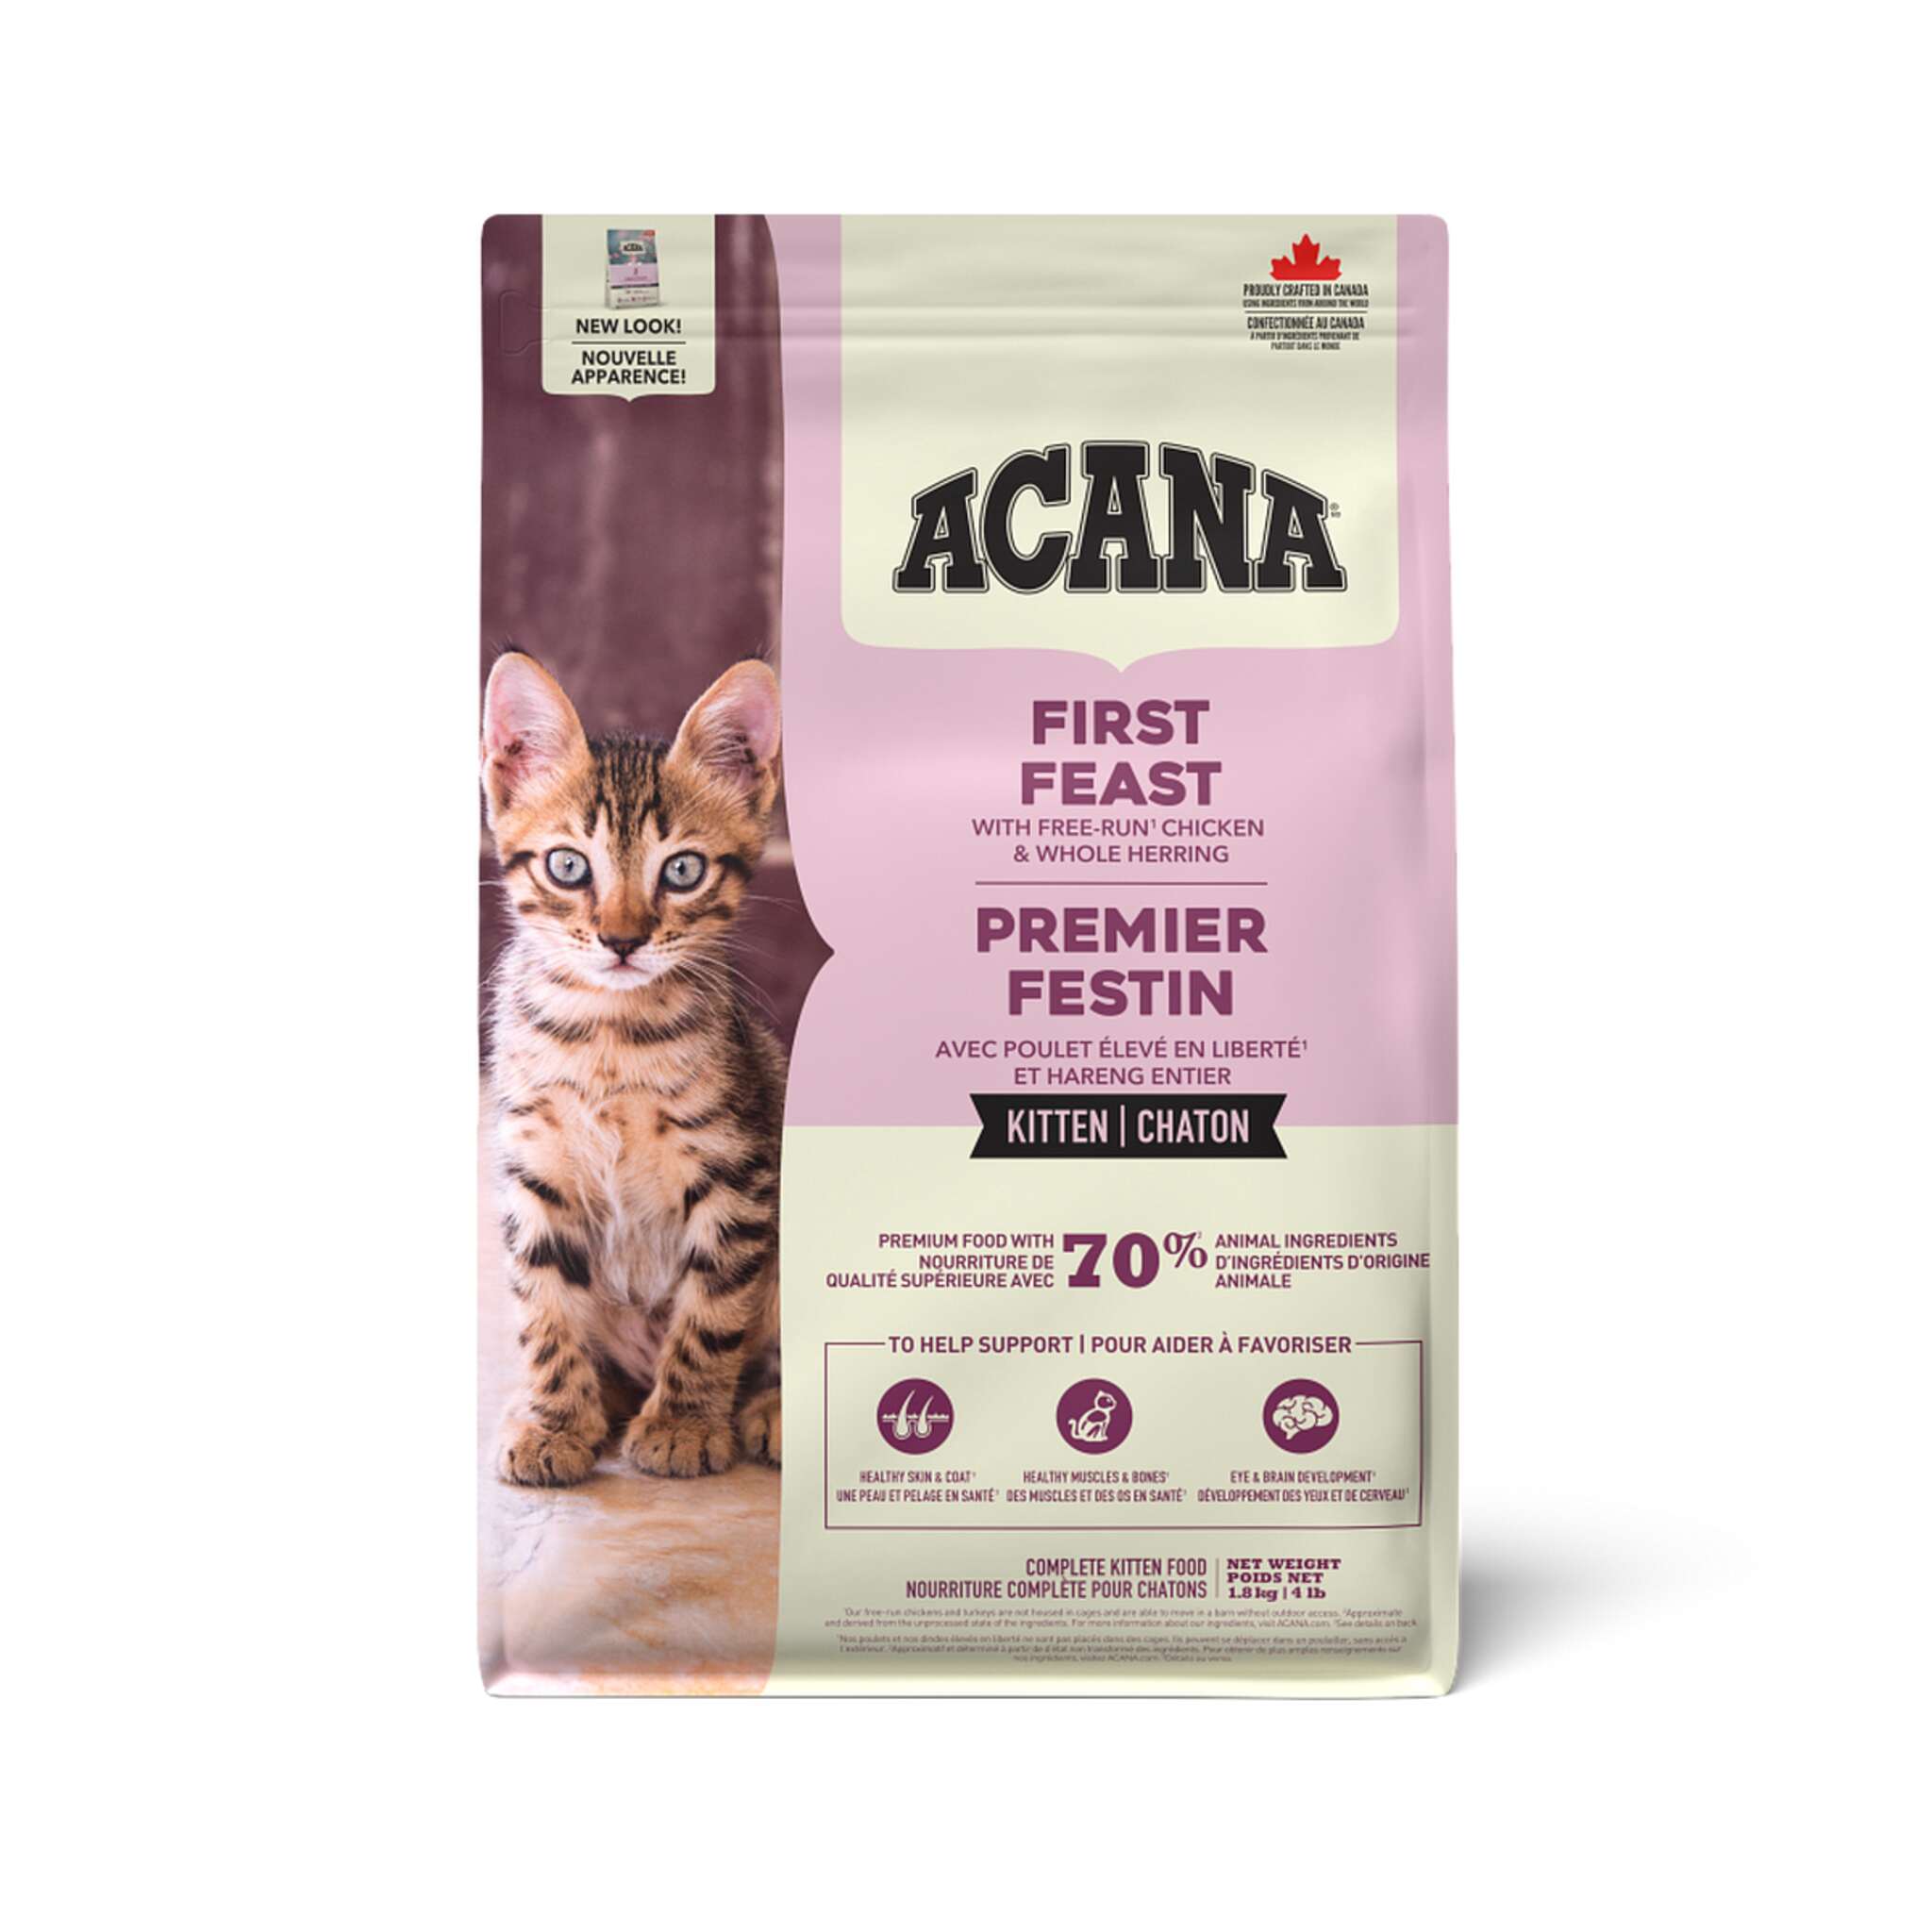 A bag of Acana First Feast Kitten food, chicken recipe, 4 lb.